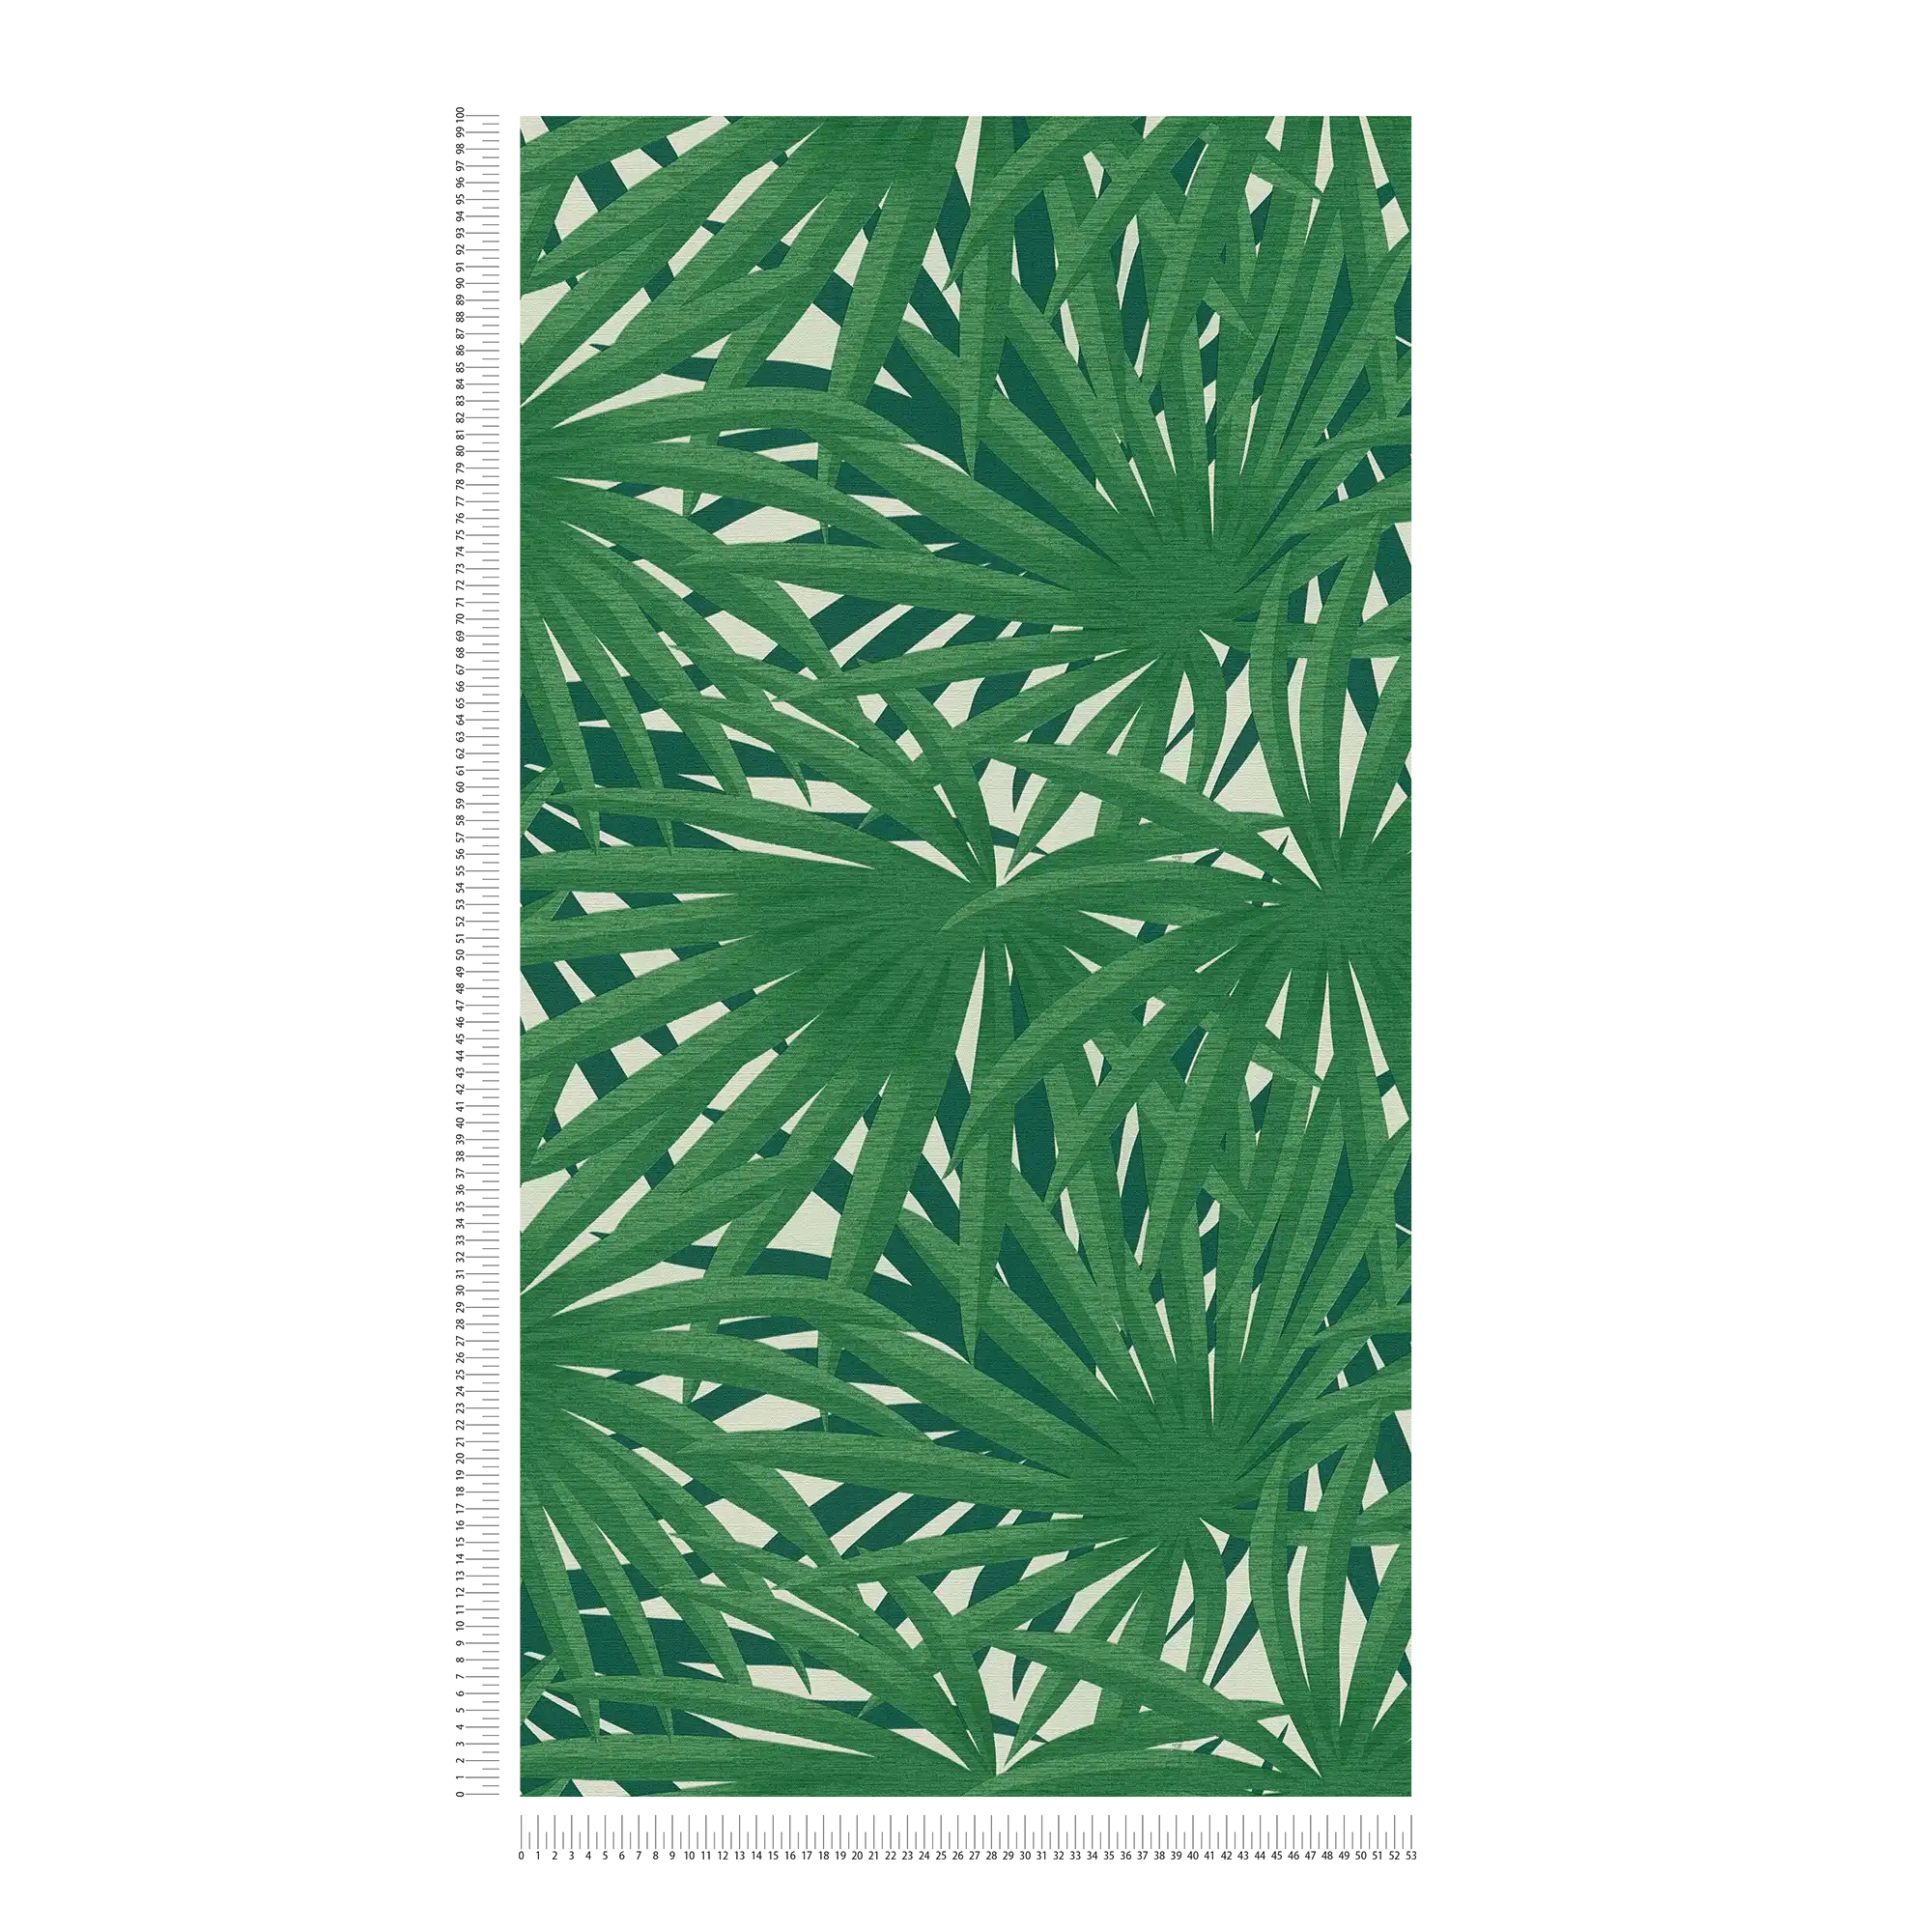             Papel pintado tropical con diseño selvático y brillo metálico - verde, metálico, blanco
        